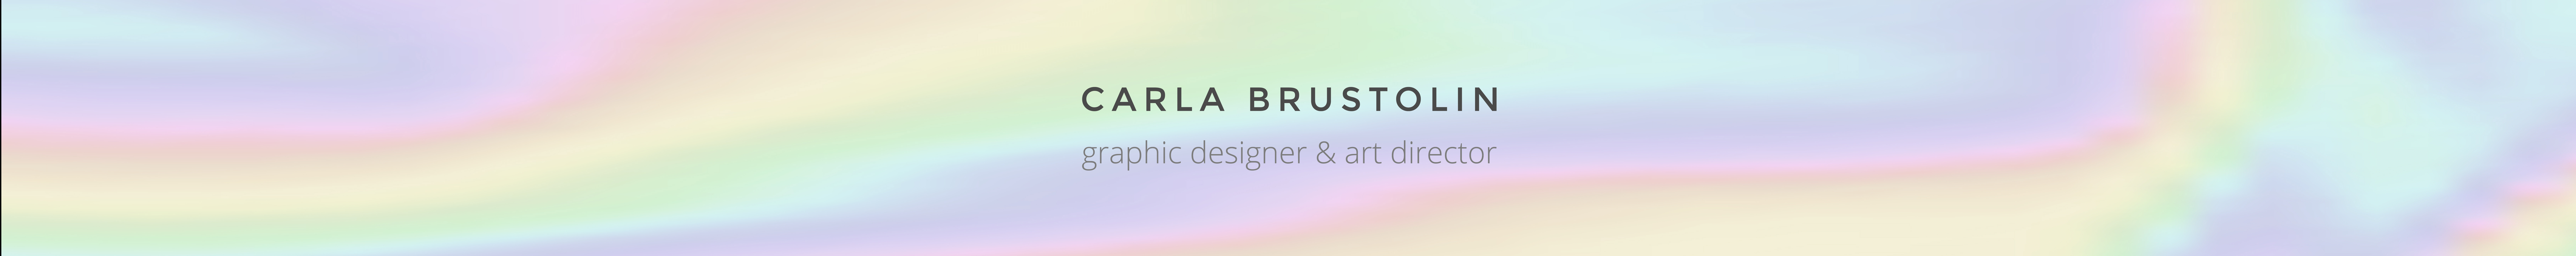 Carla Eduarda Brustolin's profile banner